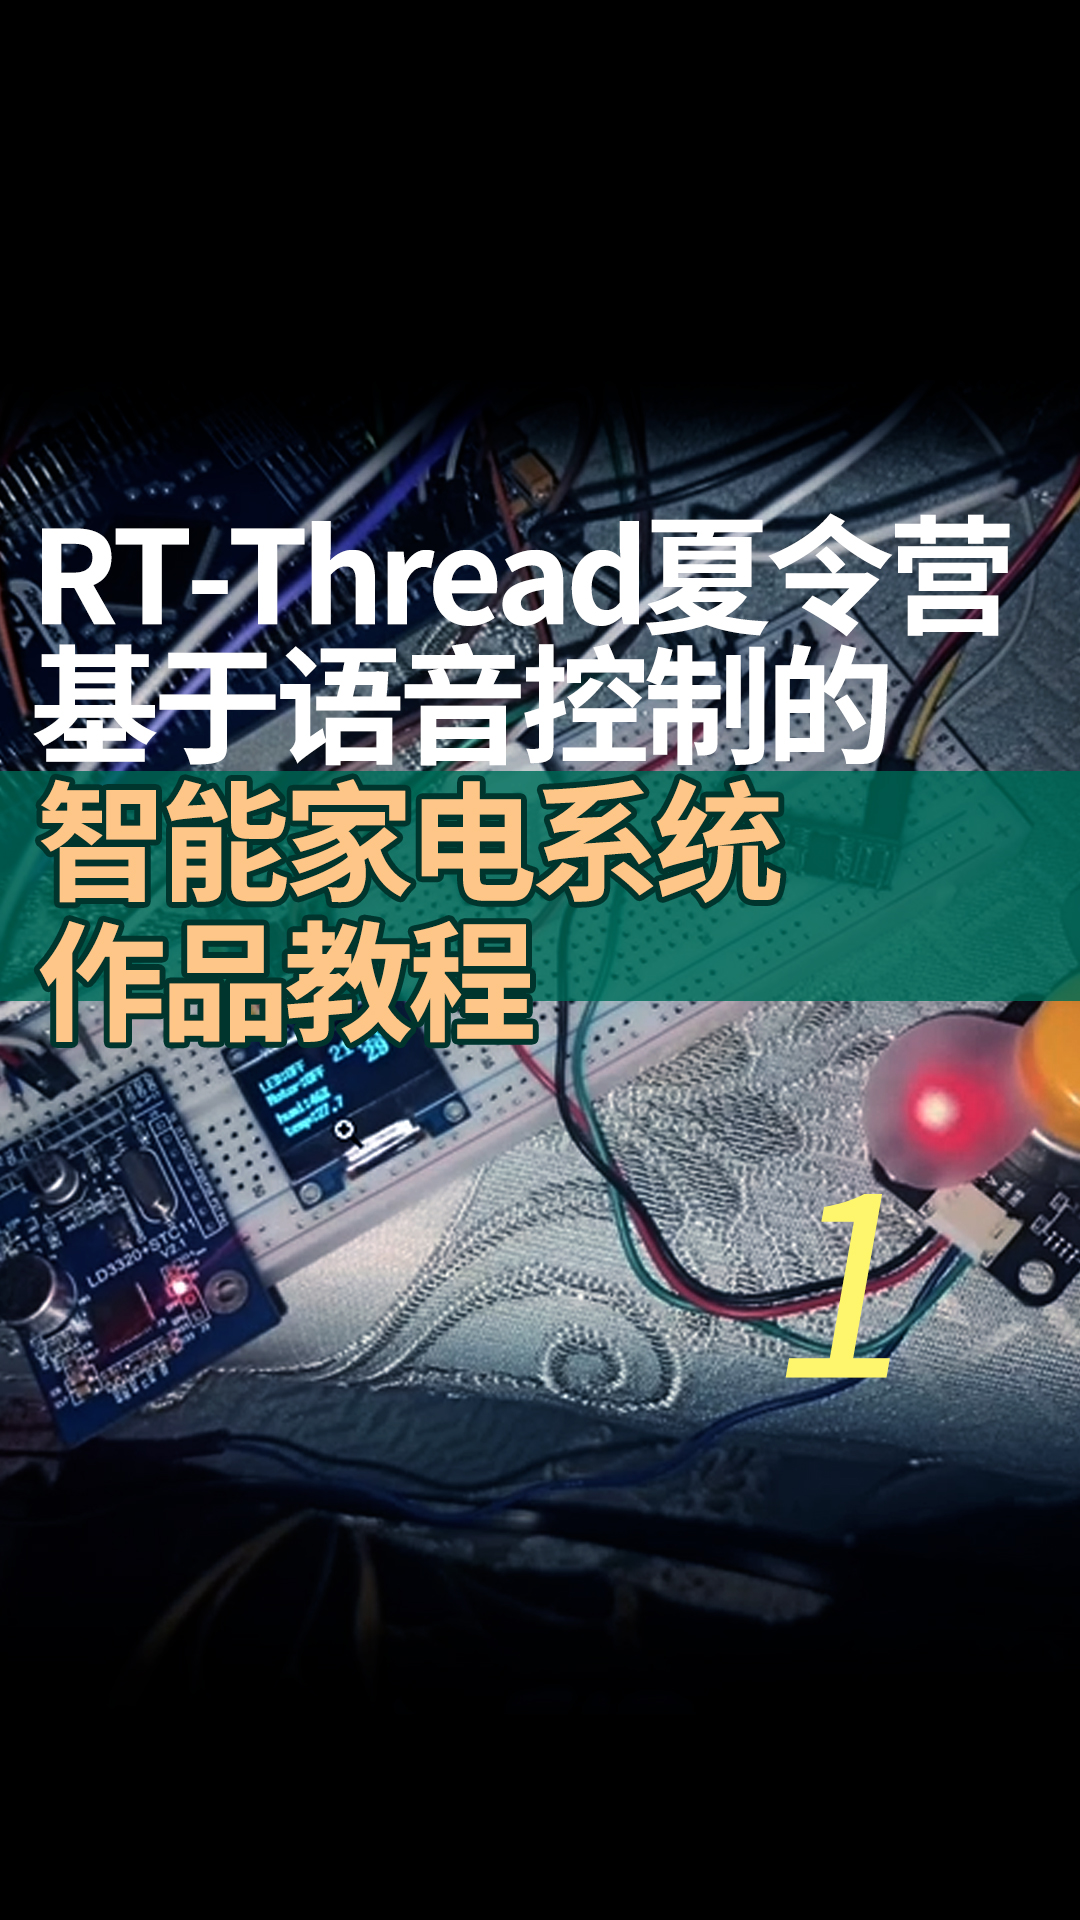 RT-Thread夏令營基于語音控制的智能家電系統作品教程 - 1-項目介紹